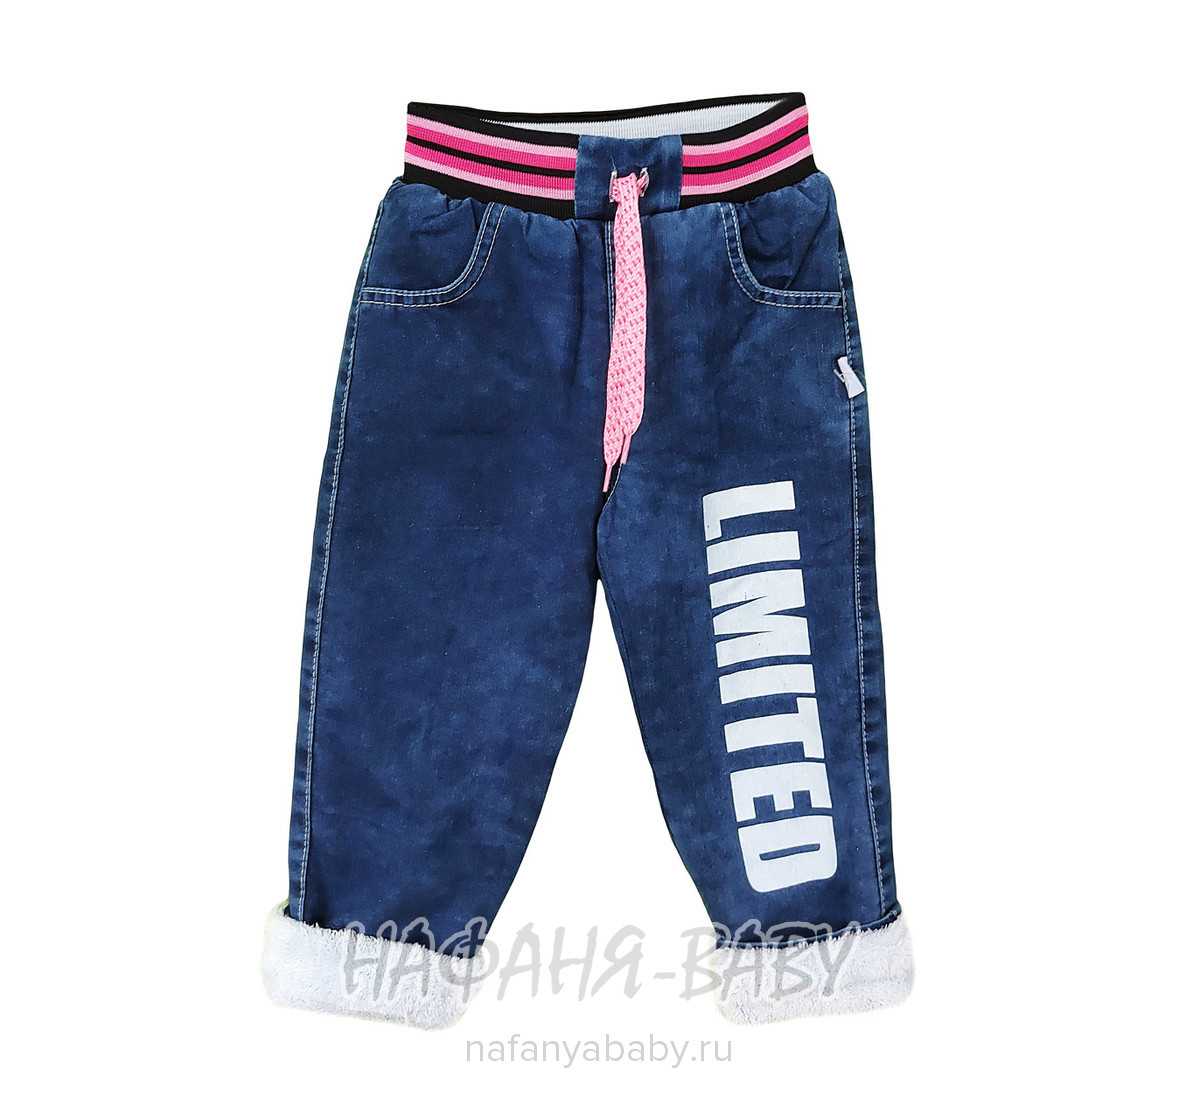 Детские теплые джинсы AKIRA, купить в интернет магазине Нафаня. арт: 2610.